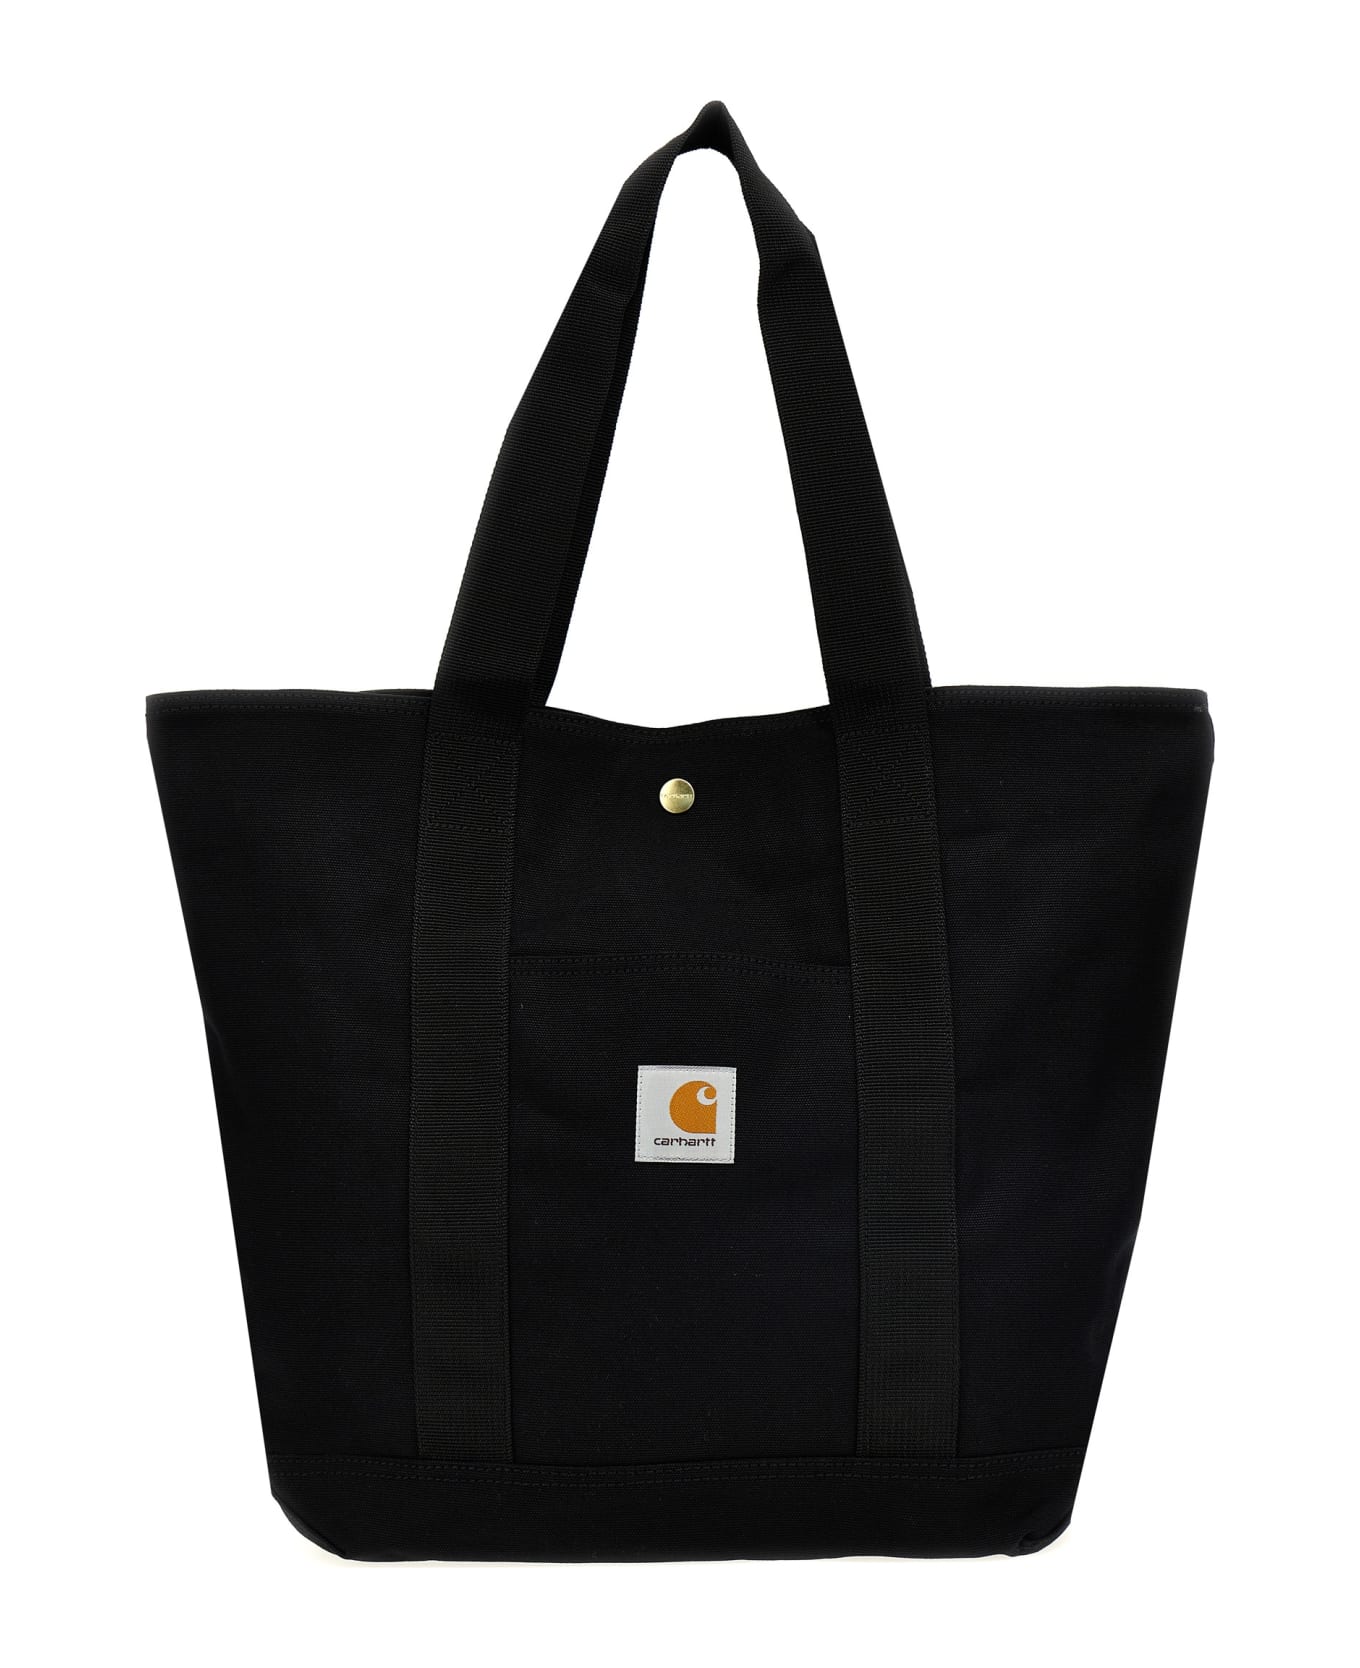 Carhartt Canvas Shopping Bag - Black